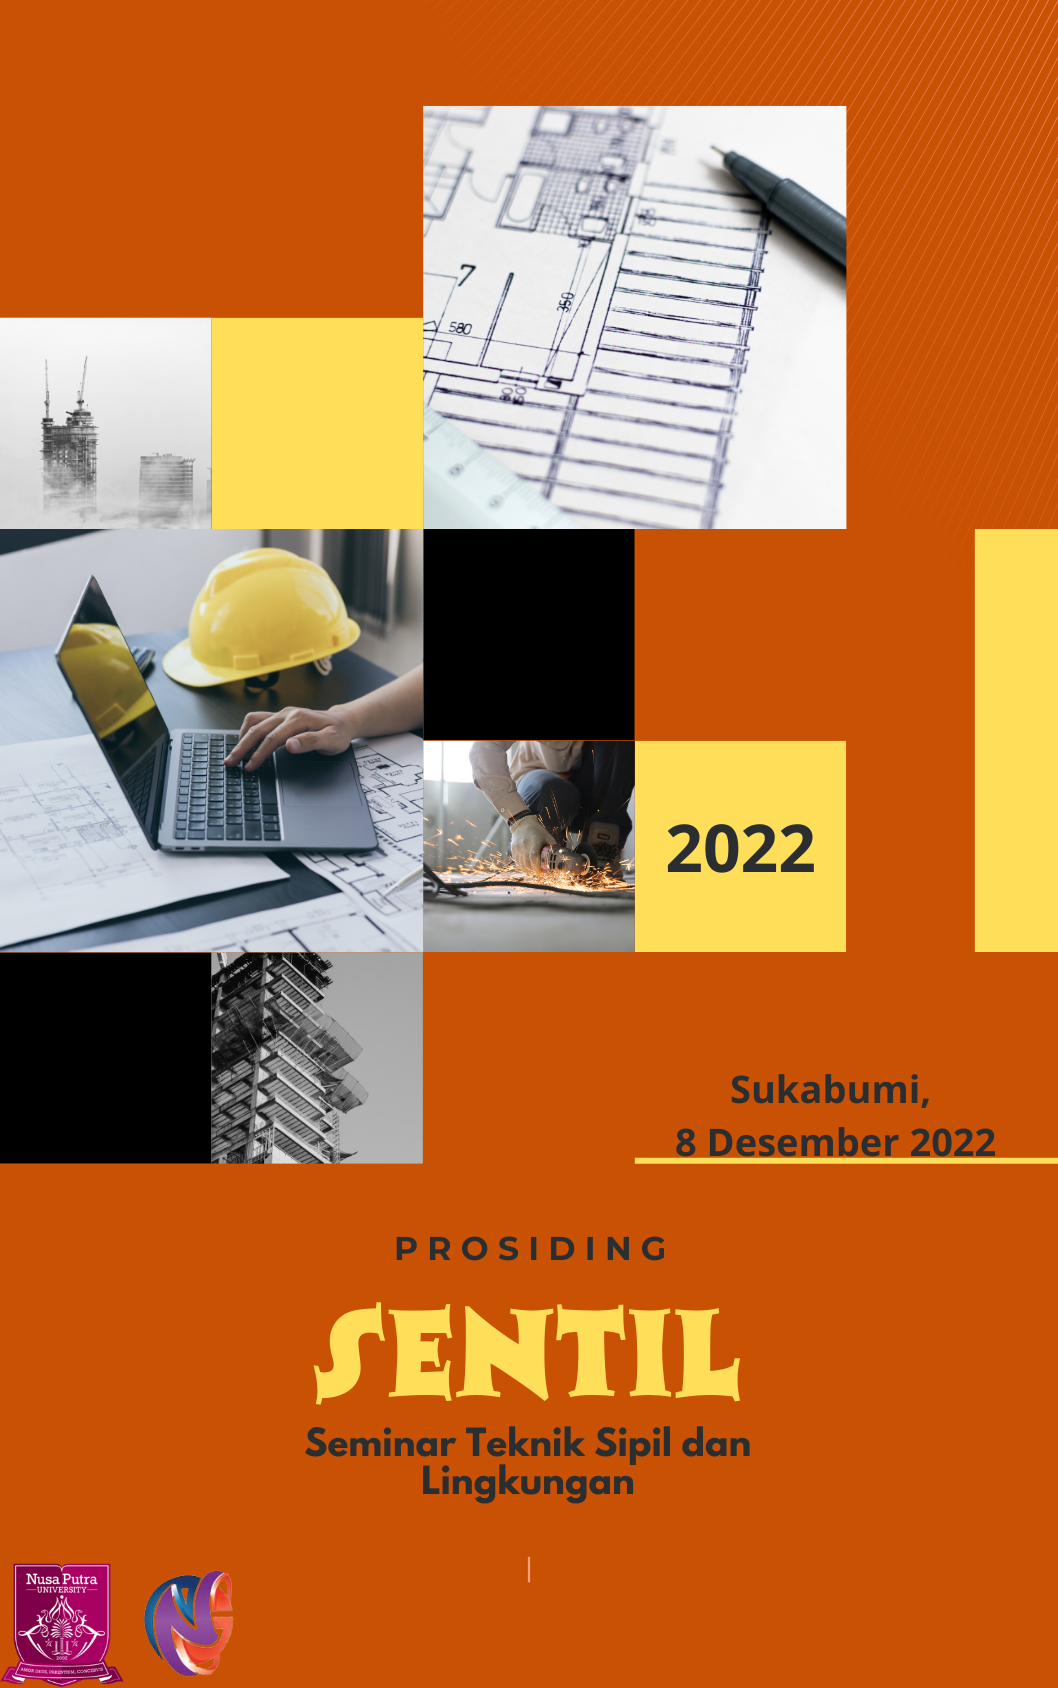 					Lihat Vol 1 No 1 (2022): SENTIL 2022 : Seminar Teknik Sipil dan Lingkungan
				